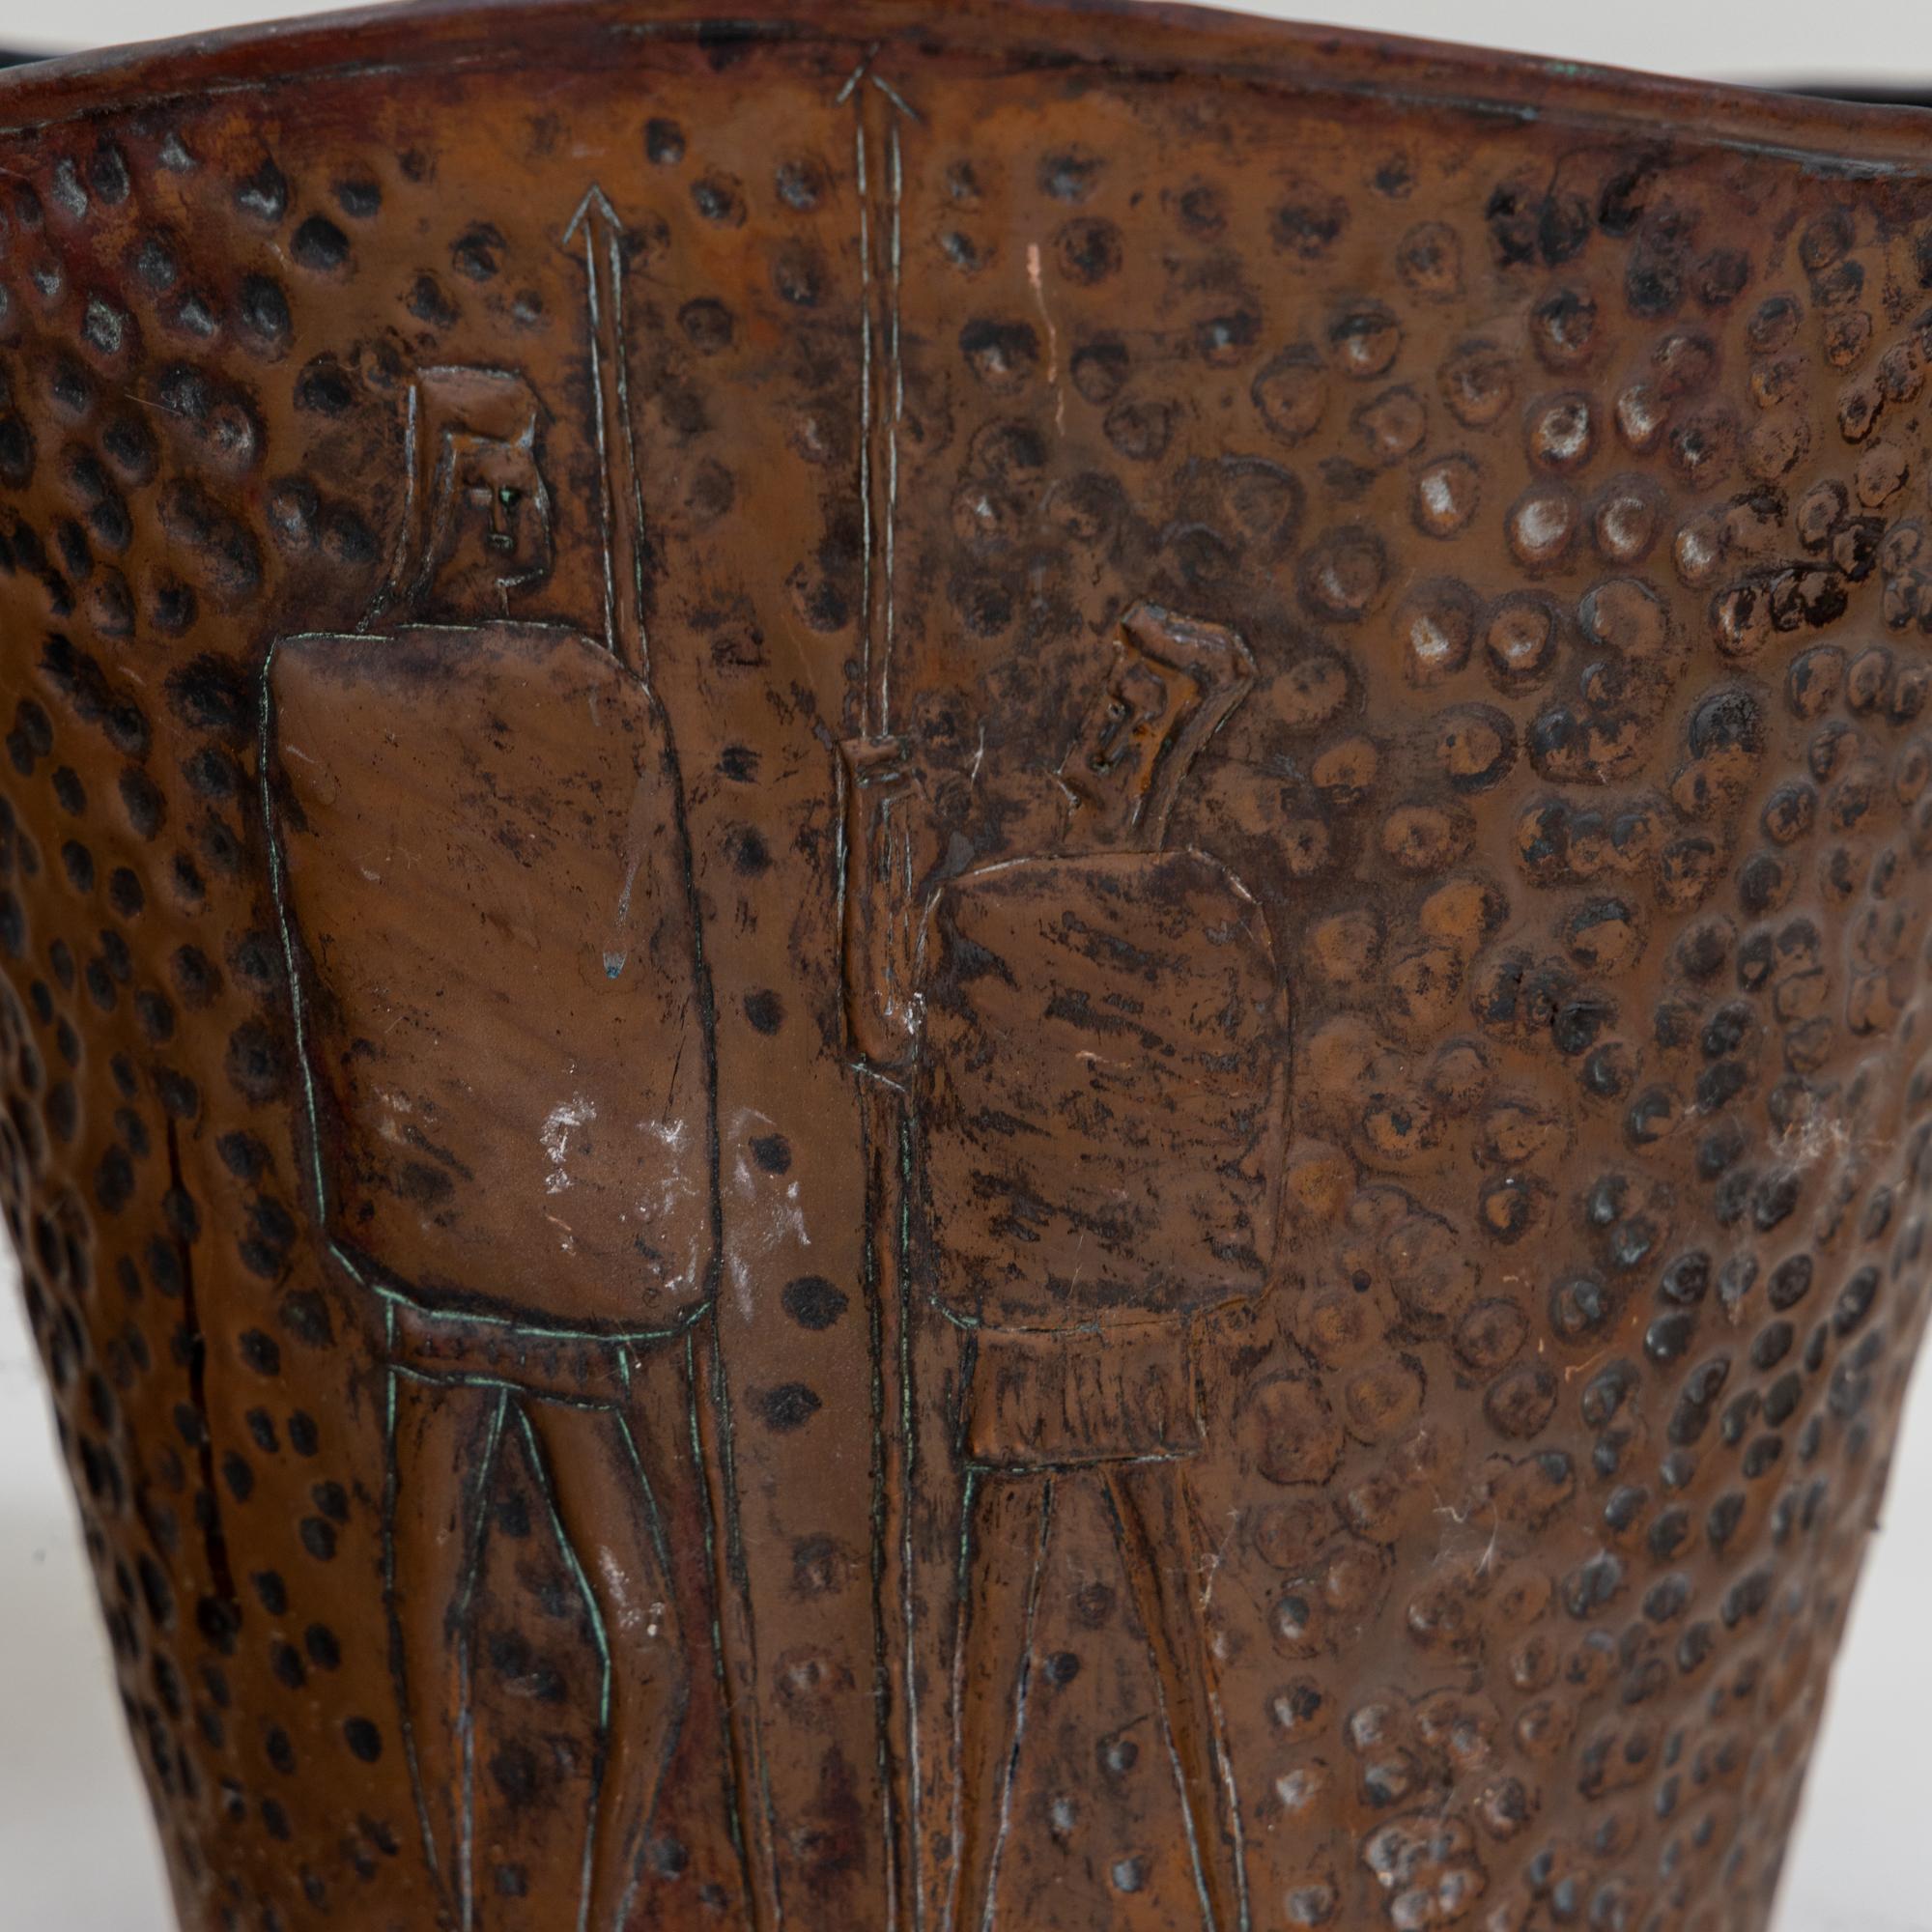 Paire de pots à plantes en cuivre avec parois en relief et bord ondulé. L'un des pots représente des guerriers stylisés, l'autre des grenades.